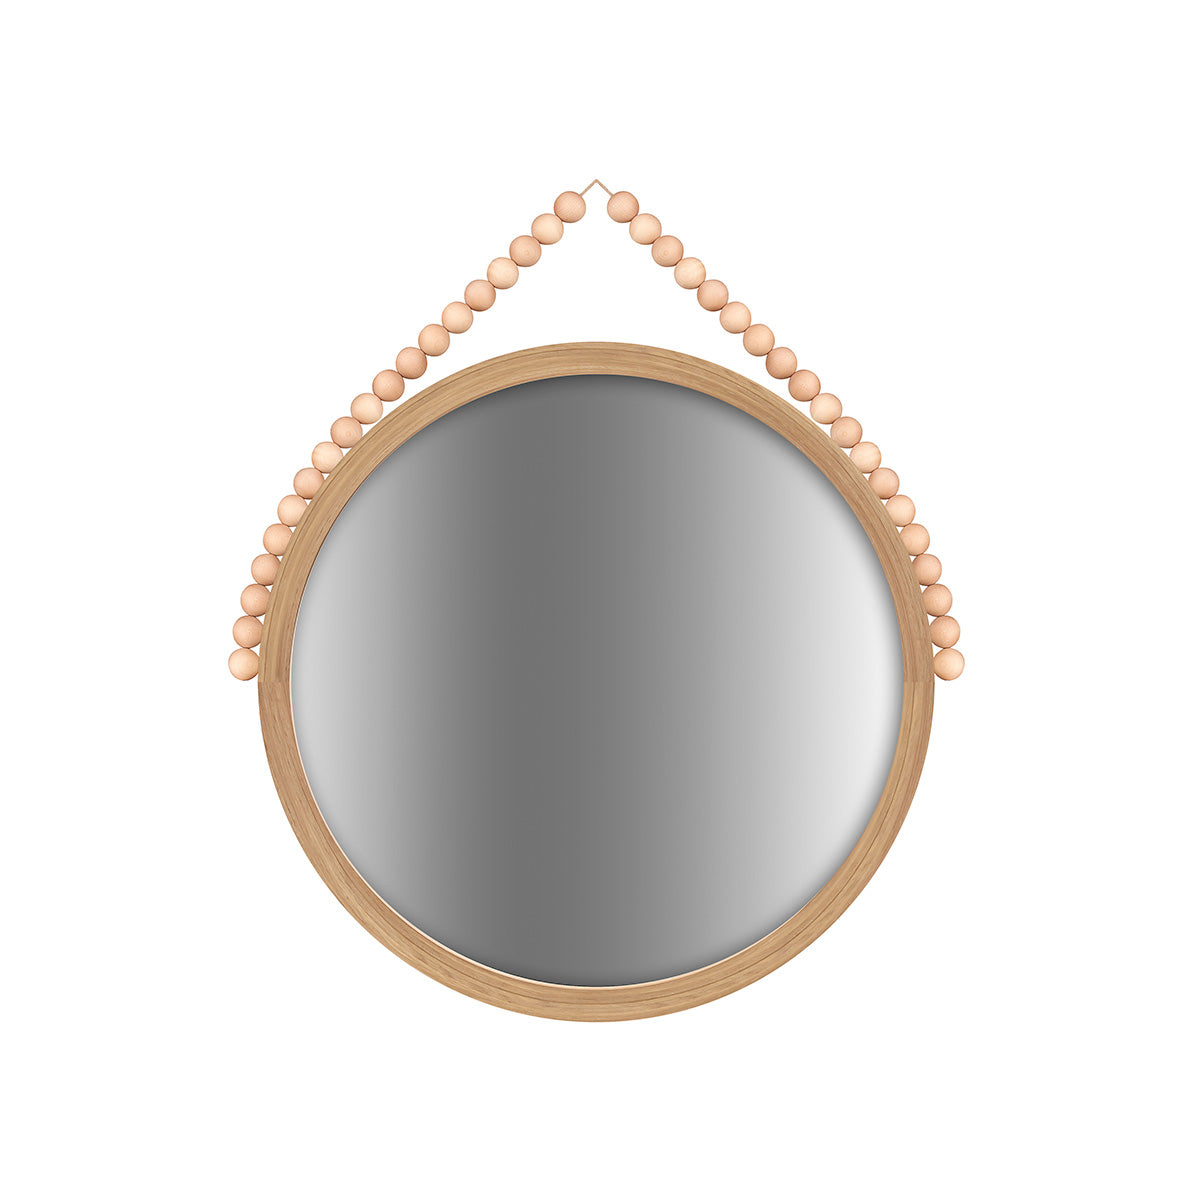 Round Nuppu mirror, 52 cm